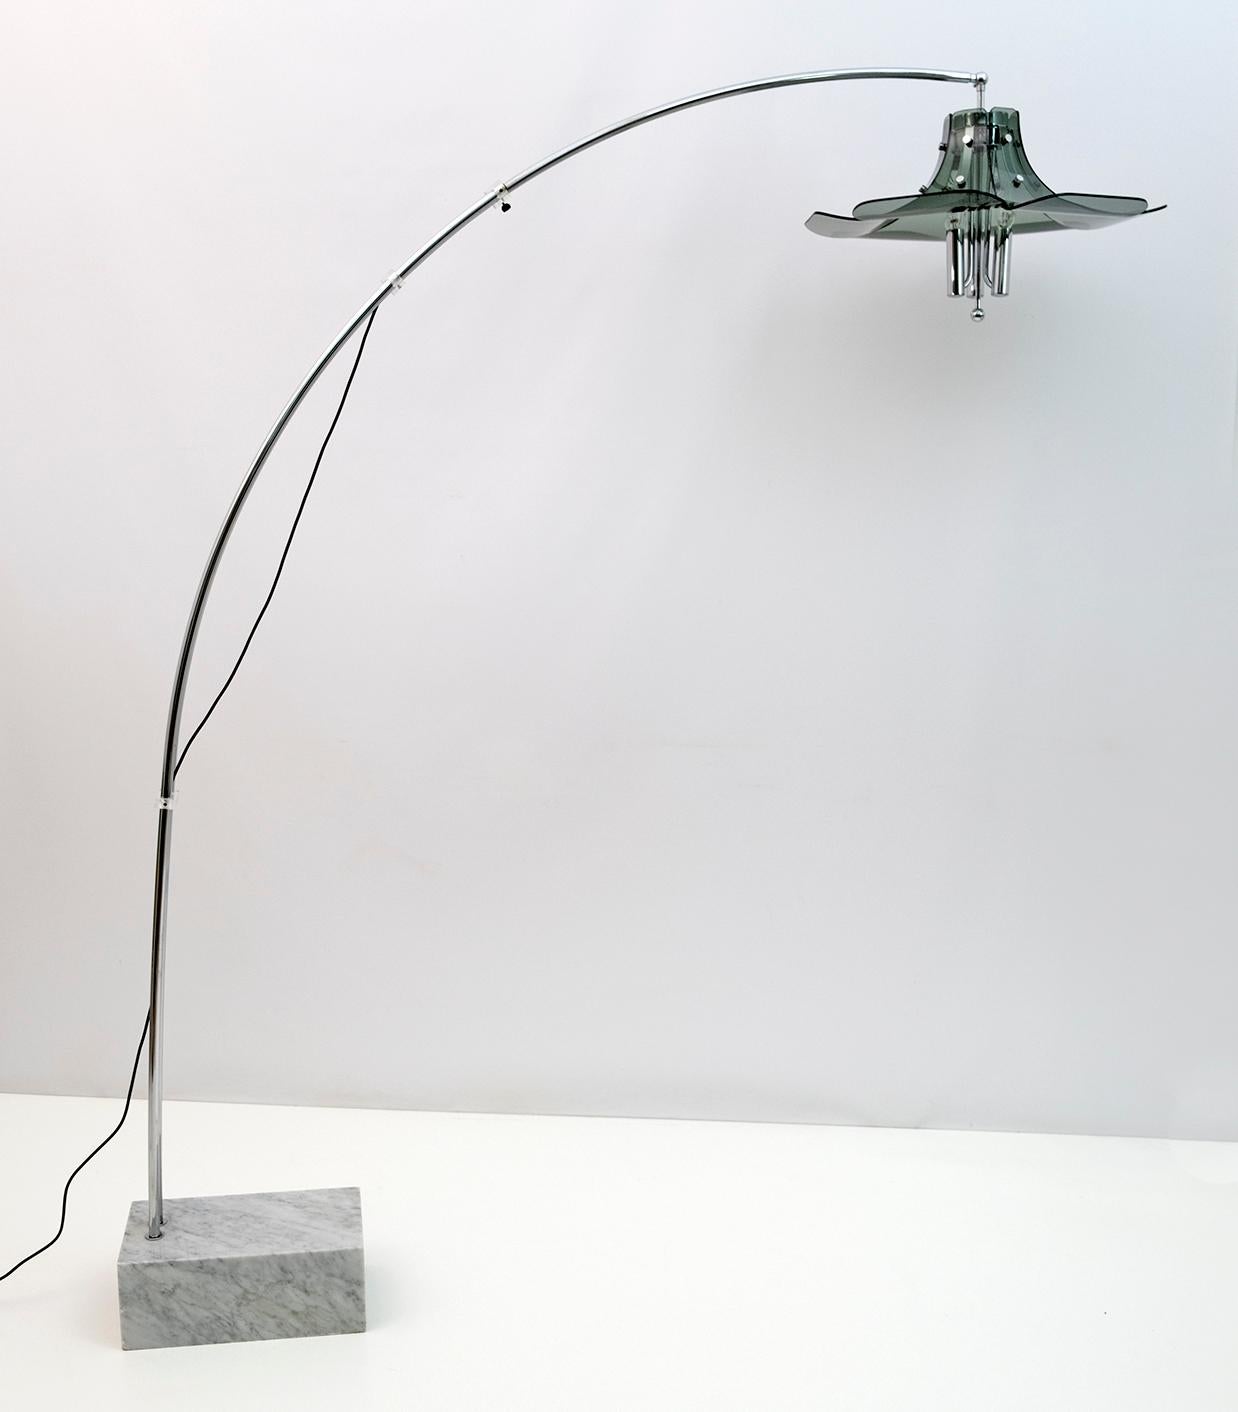 Bogen-Stehleuchte von Fontana Arte nach einem Entwurf von Max Ingrand mit Sockel aus Carrara-Marmor, Struktur aus verchromtem Metall und gebogenem Glas mit leichter Abnutzung, 1970er Jahre. Einstellbares Licht und ausziehbarer Bogen von mindestens